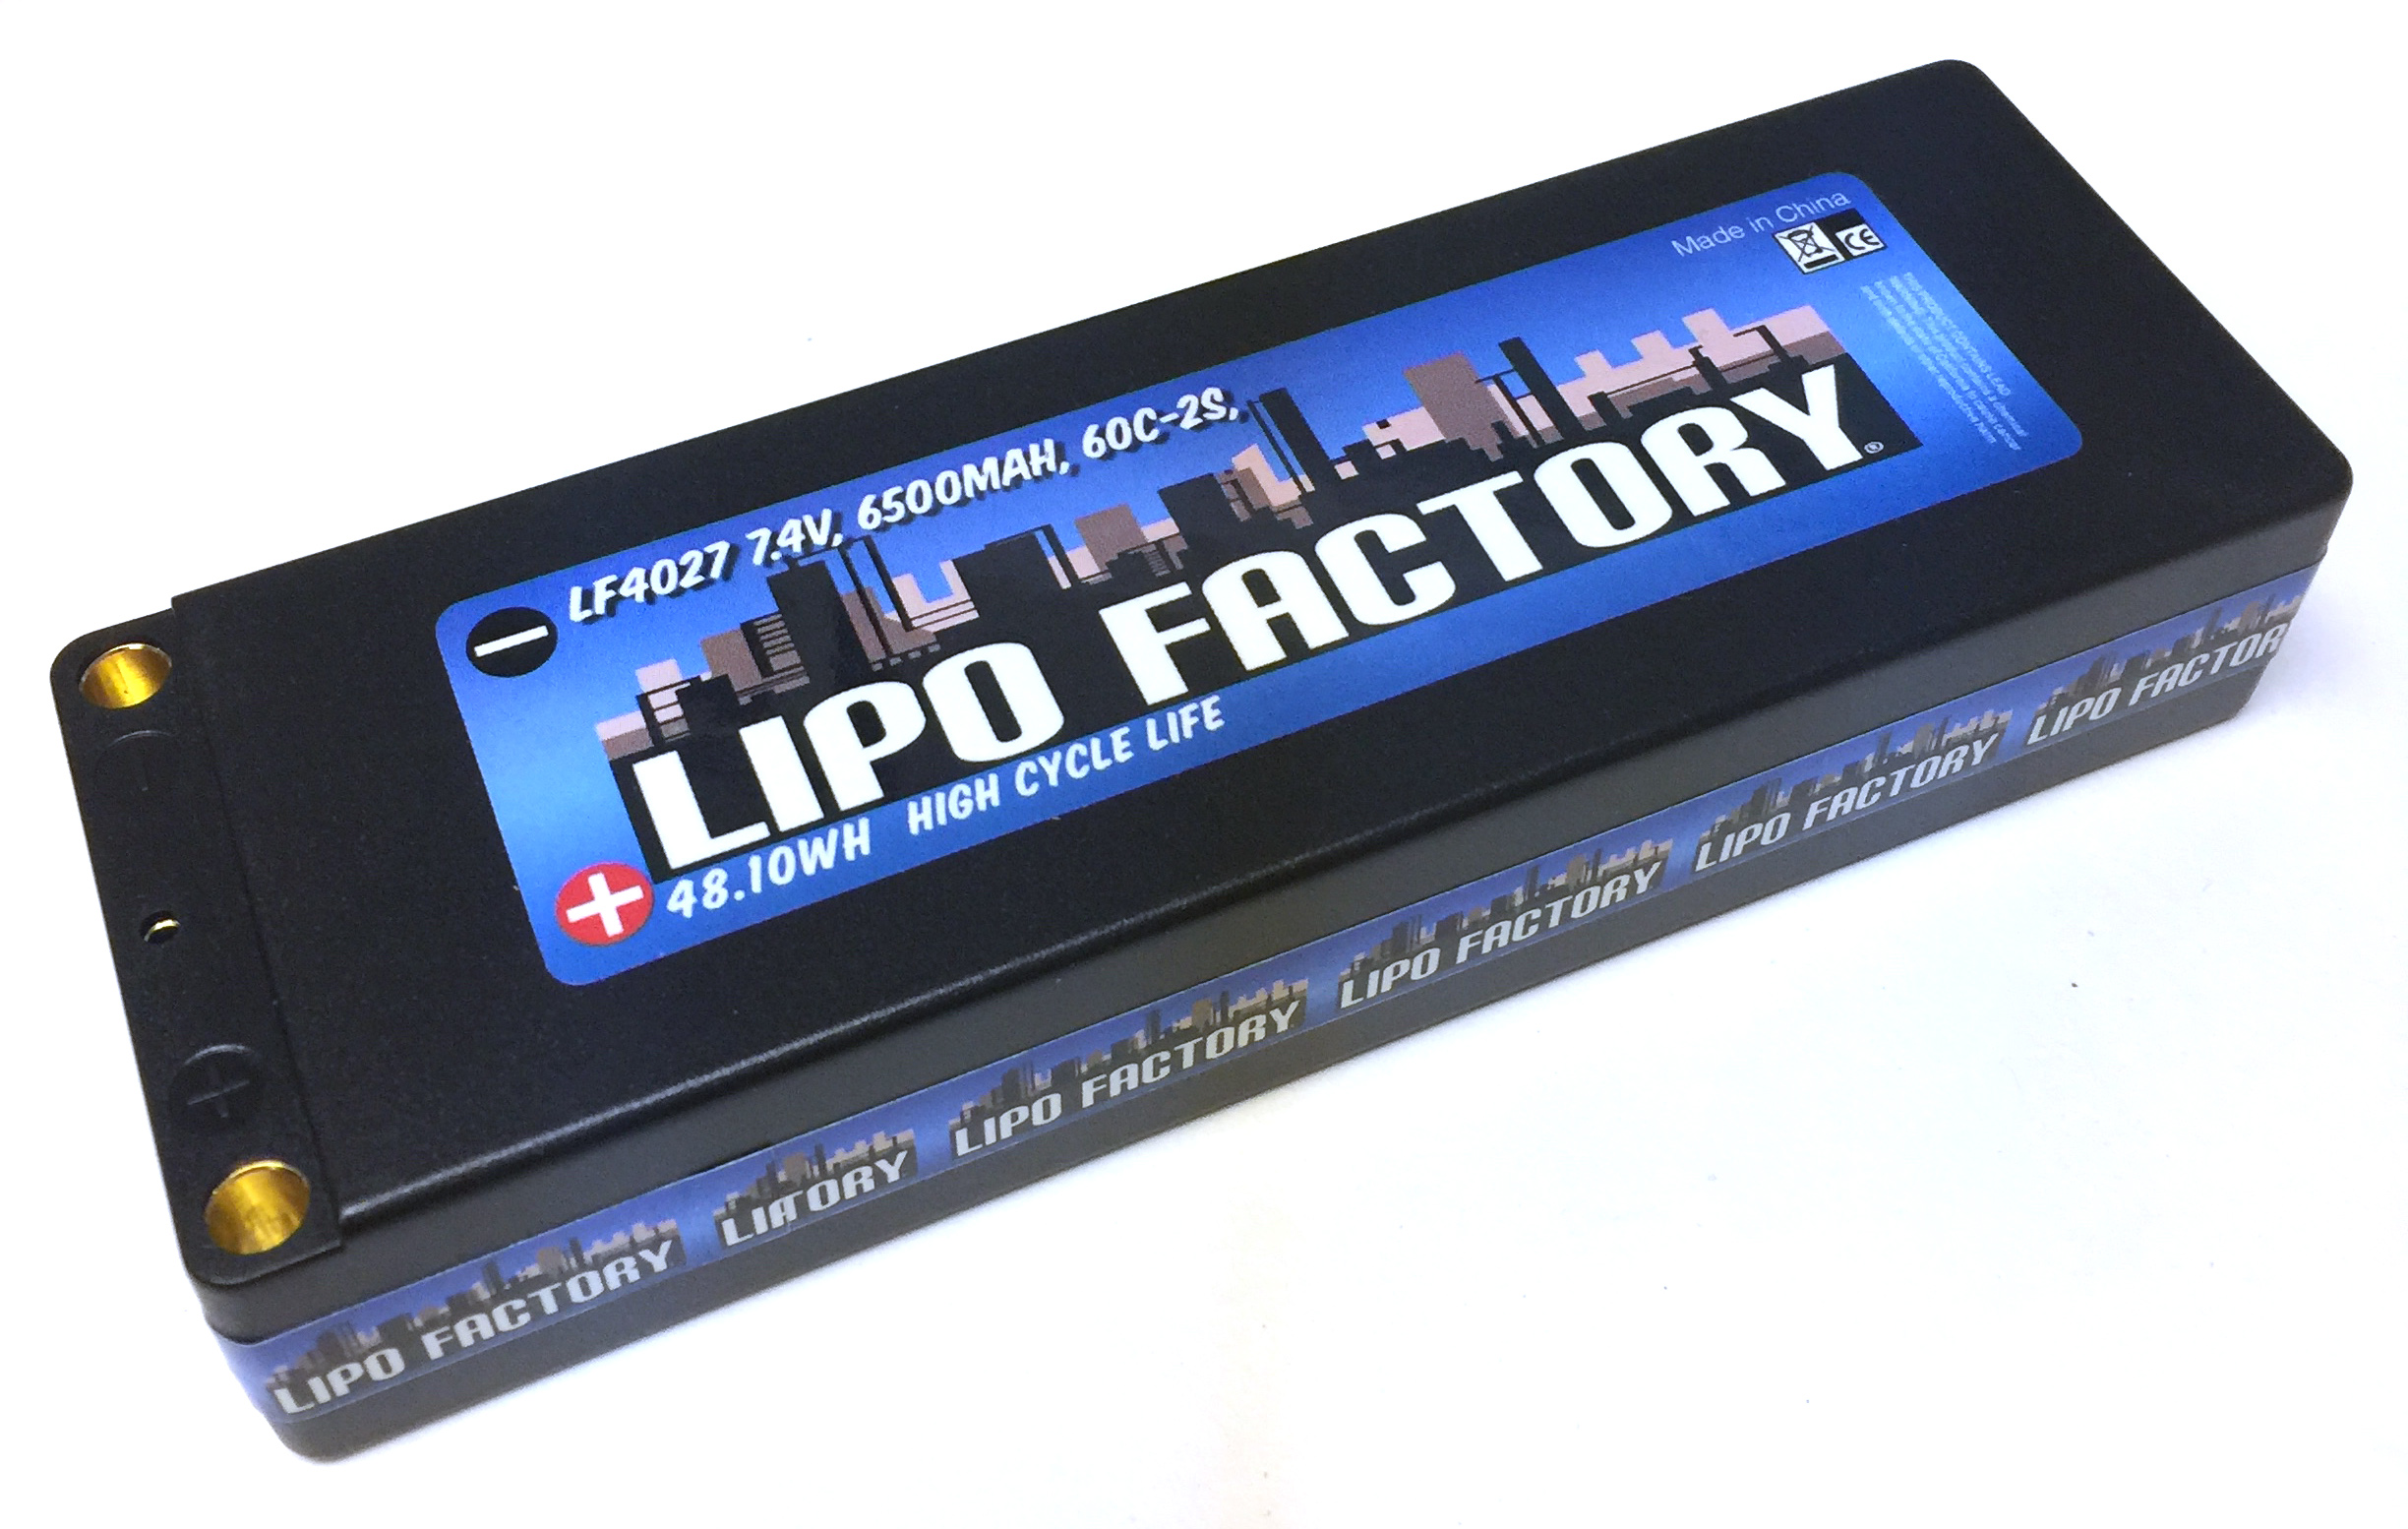 Lipo-Factoryobe[i7.4V 6500mah 60Cj 5mmoii